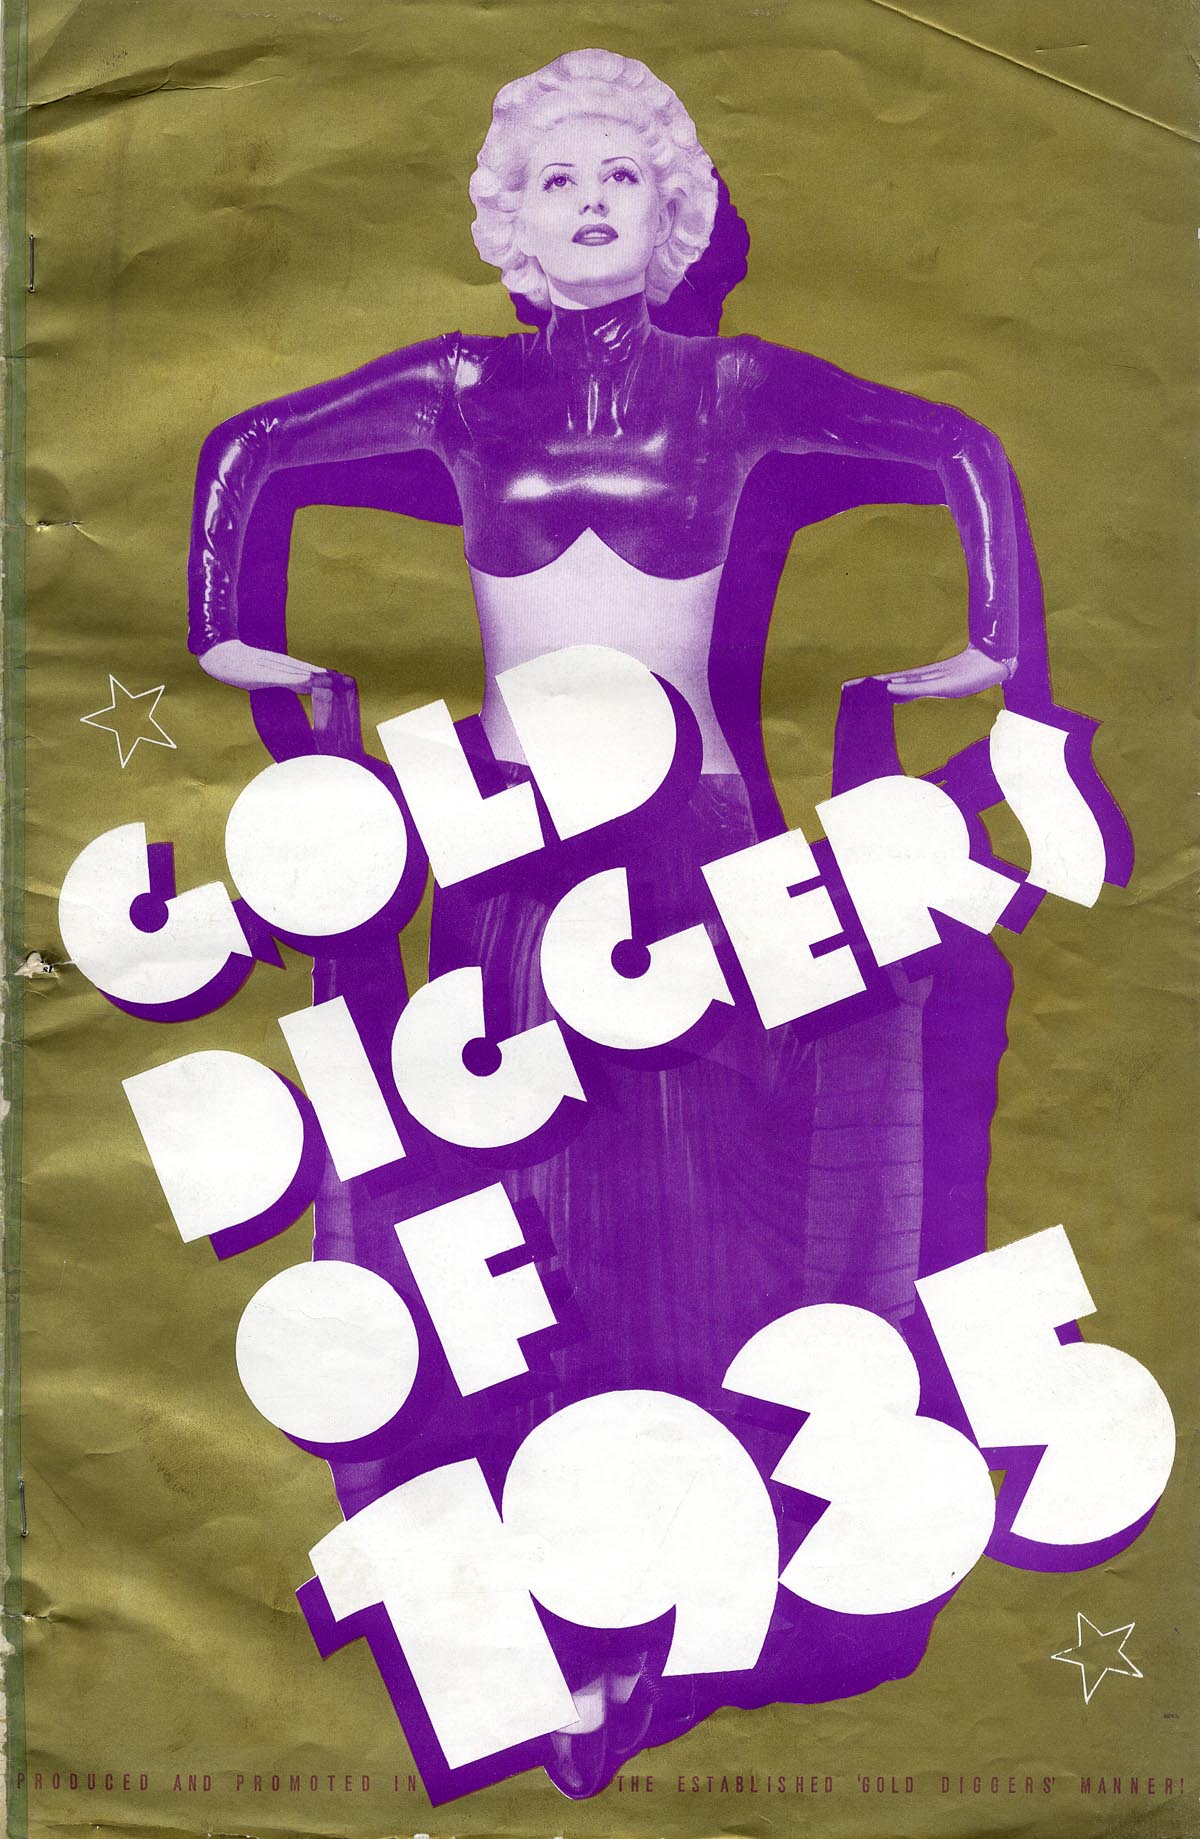 Stills from Gold Diggers of 1935 (1935, dir. Busby Berkeley